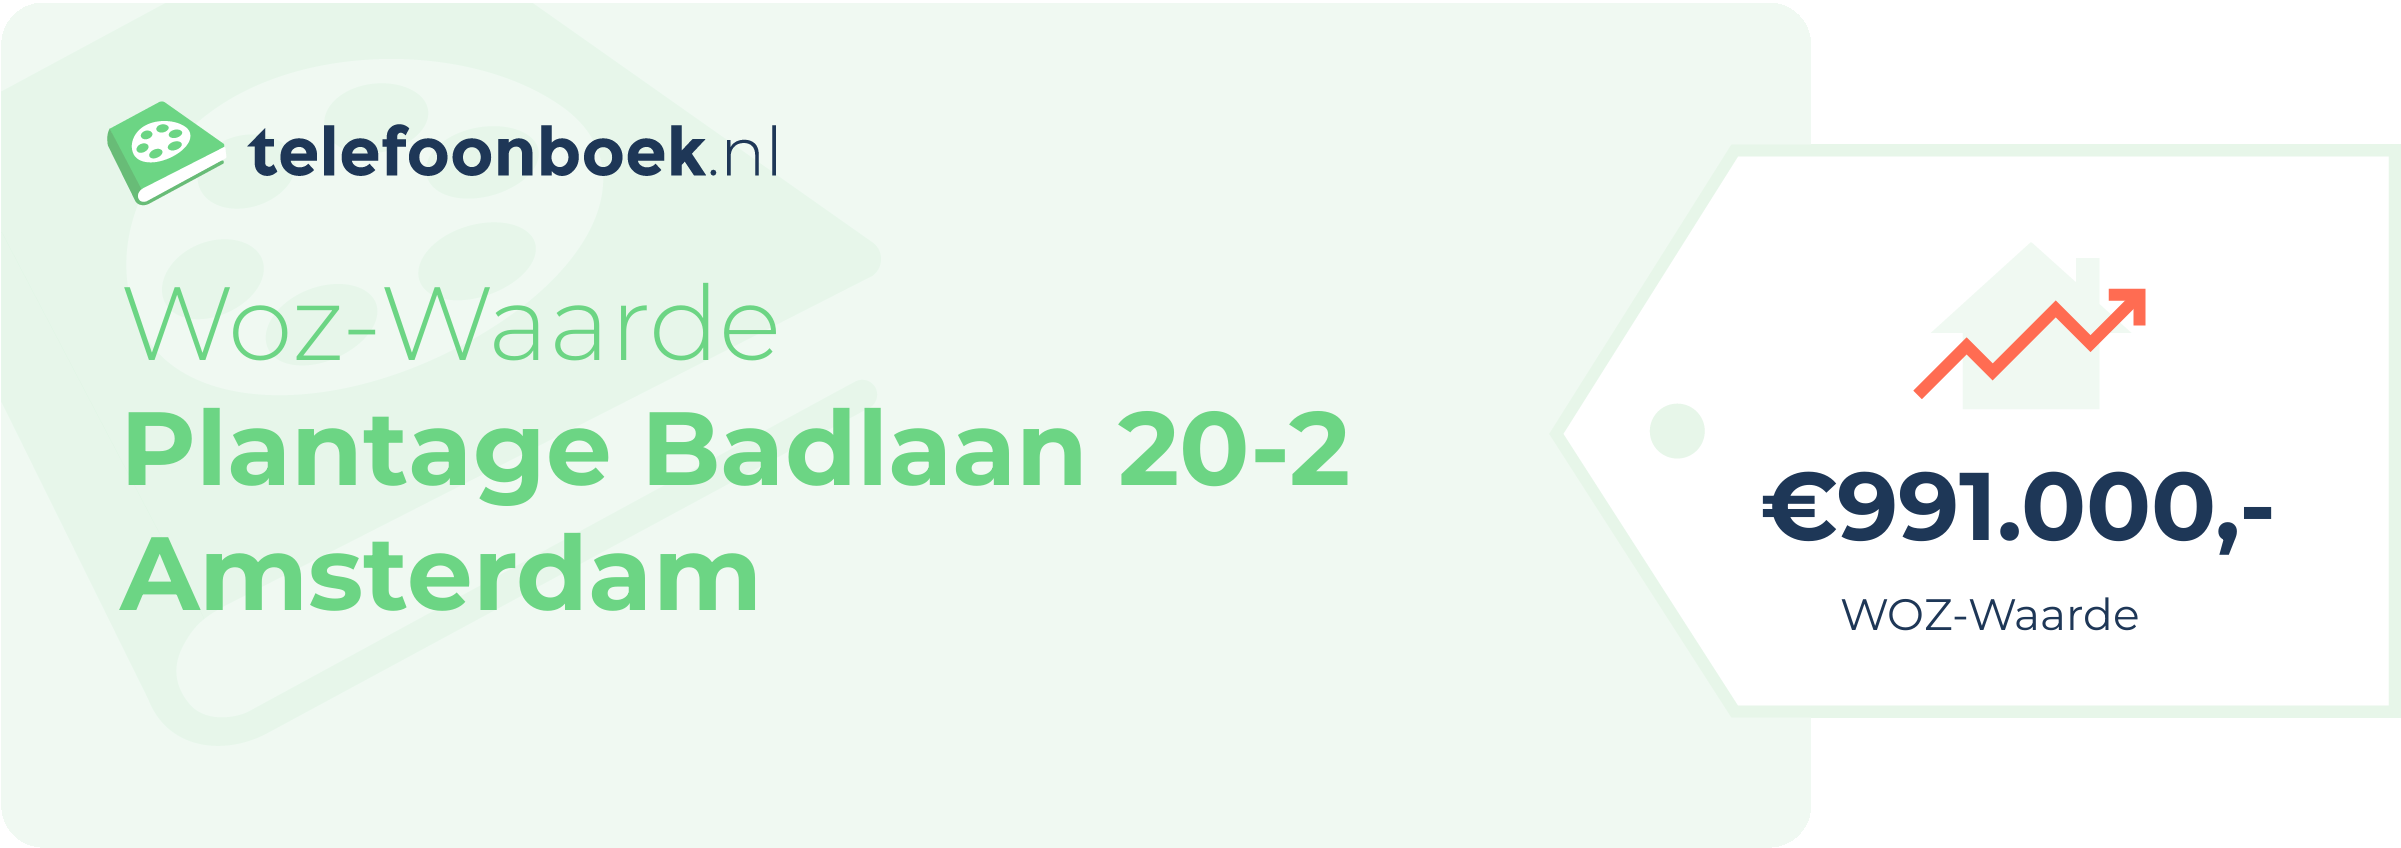 WOZ-waarde Plantage Badlaan 20-2 Amsterdam